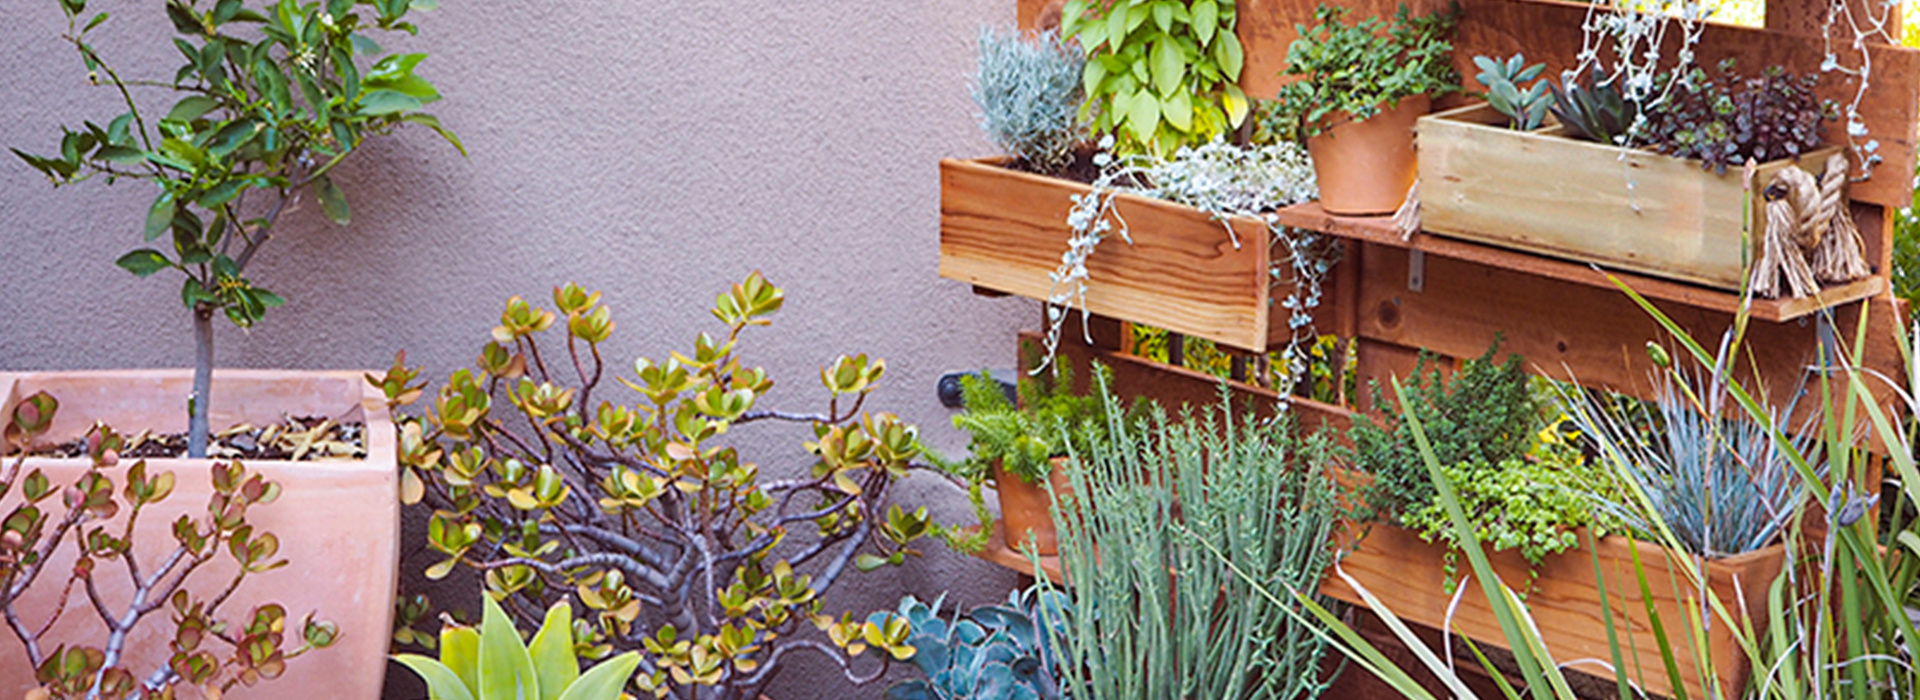 DIY Vertical Box Planter Garden